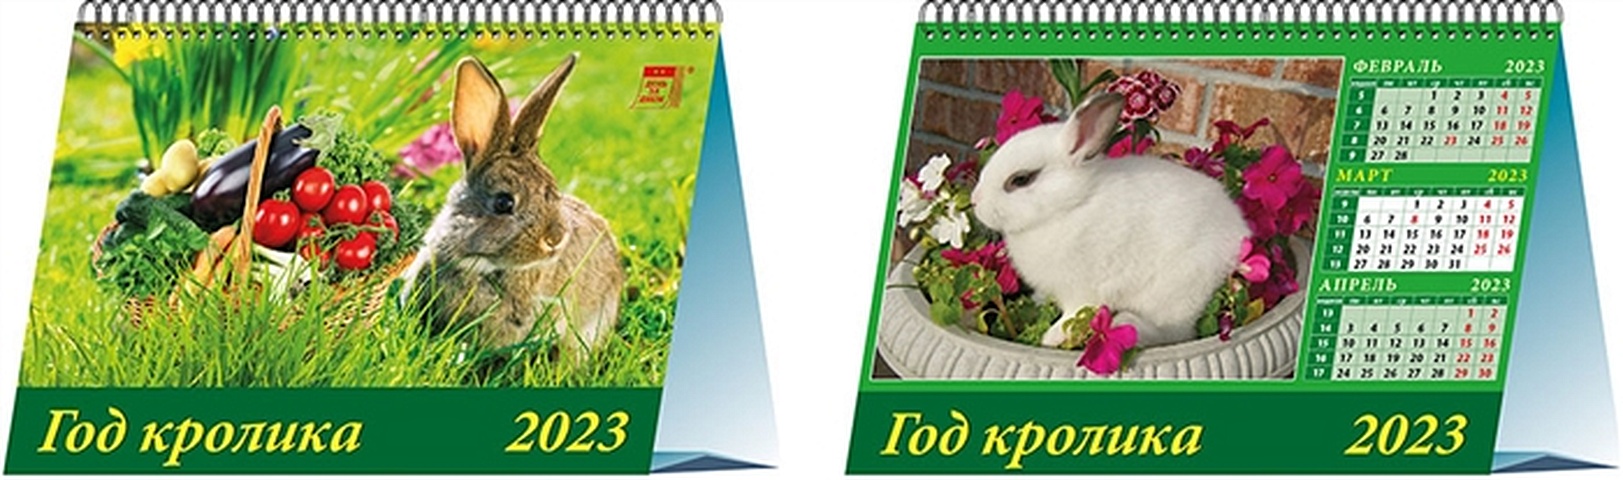 Календарь настольный на 2023 год Год кролика